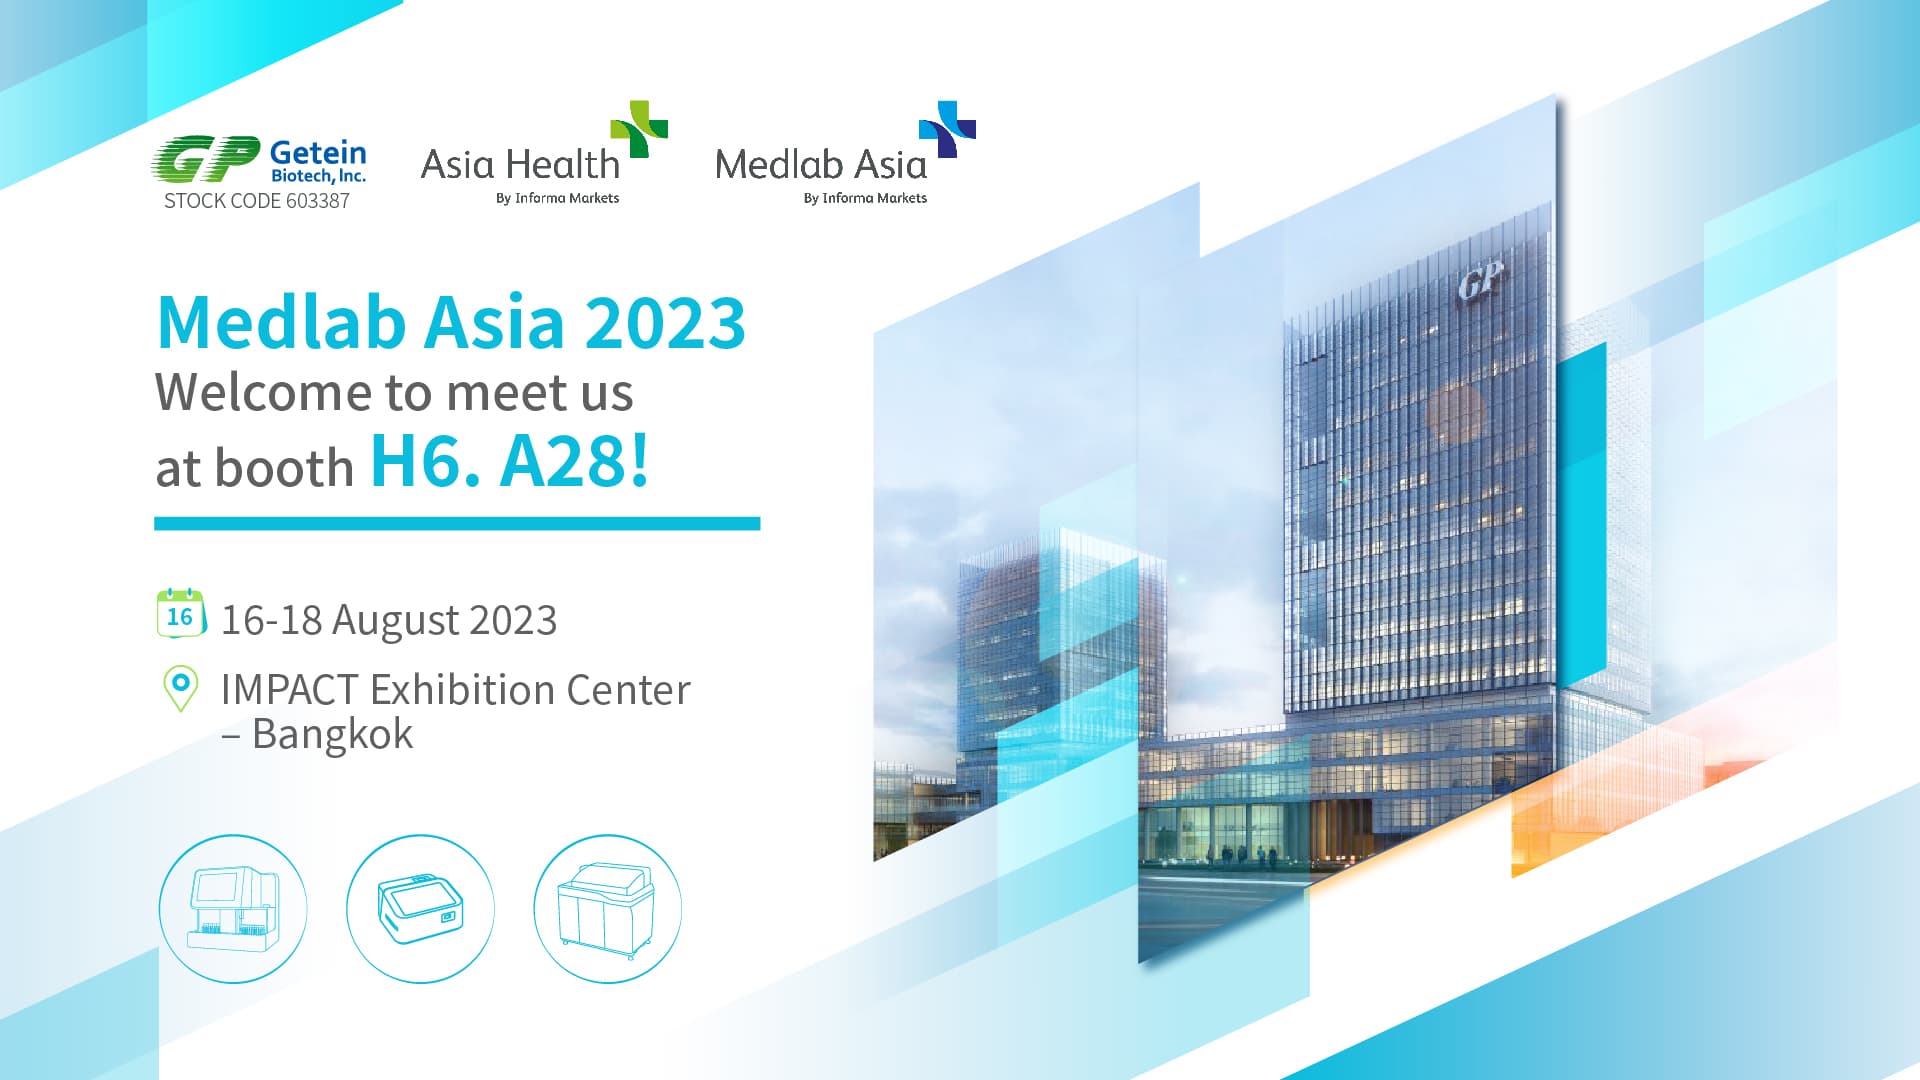 【Medlab Asia & Asia Health 2023】 Moment splendide !